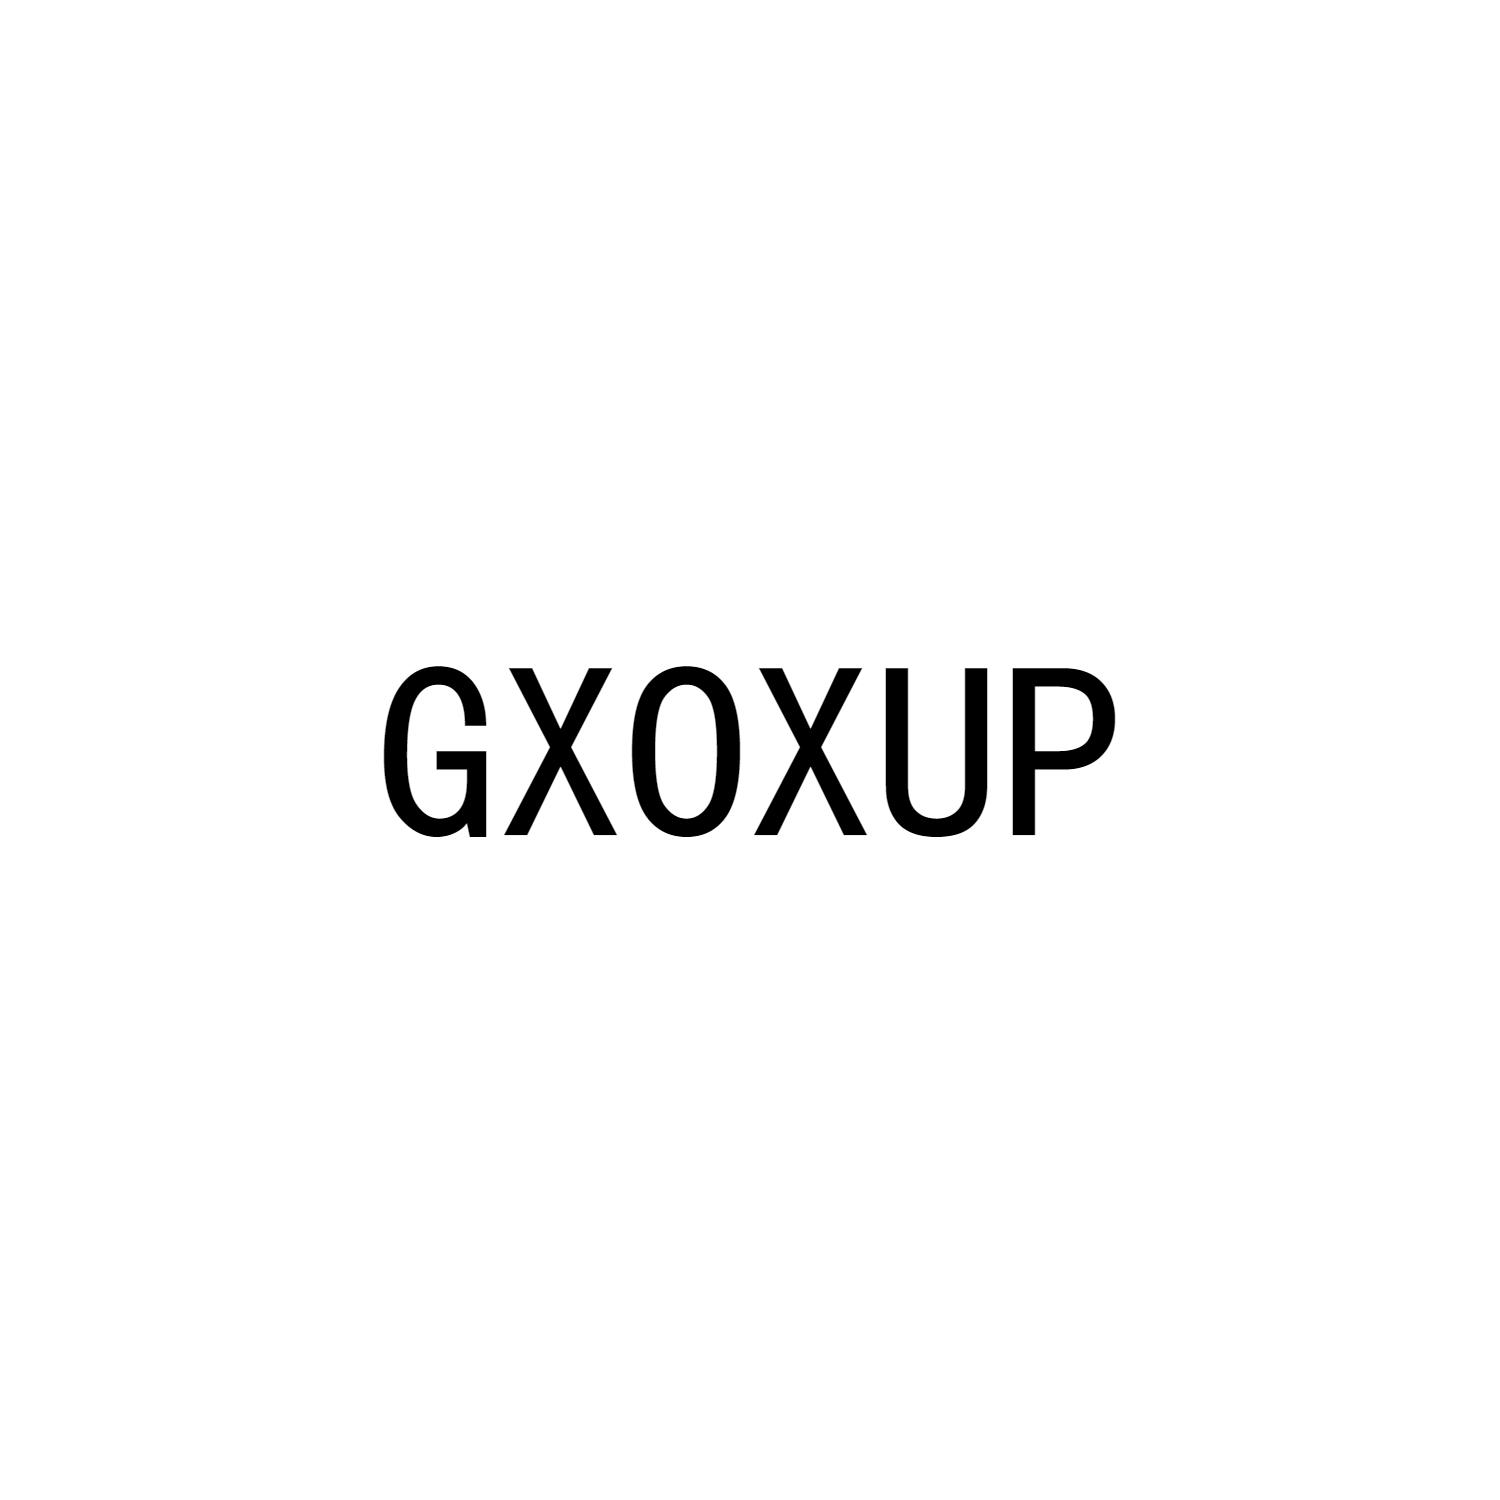 GXOXUP